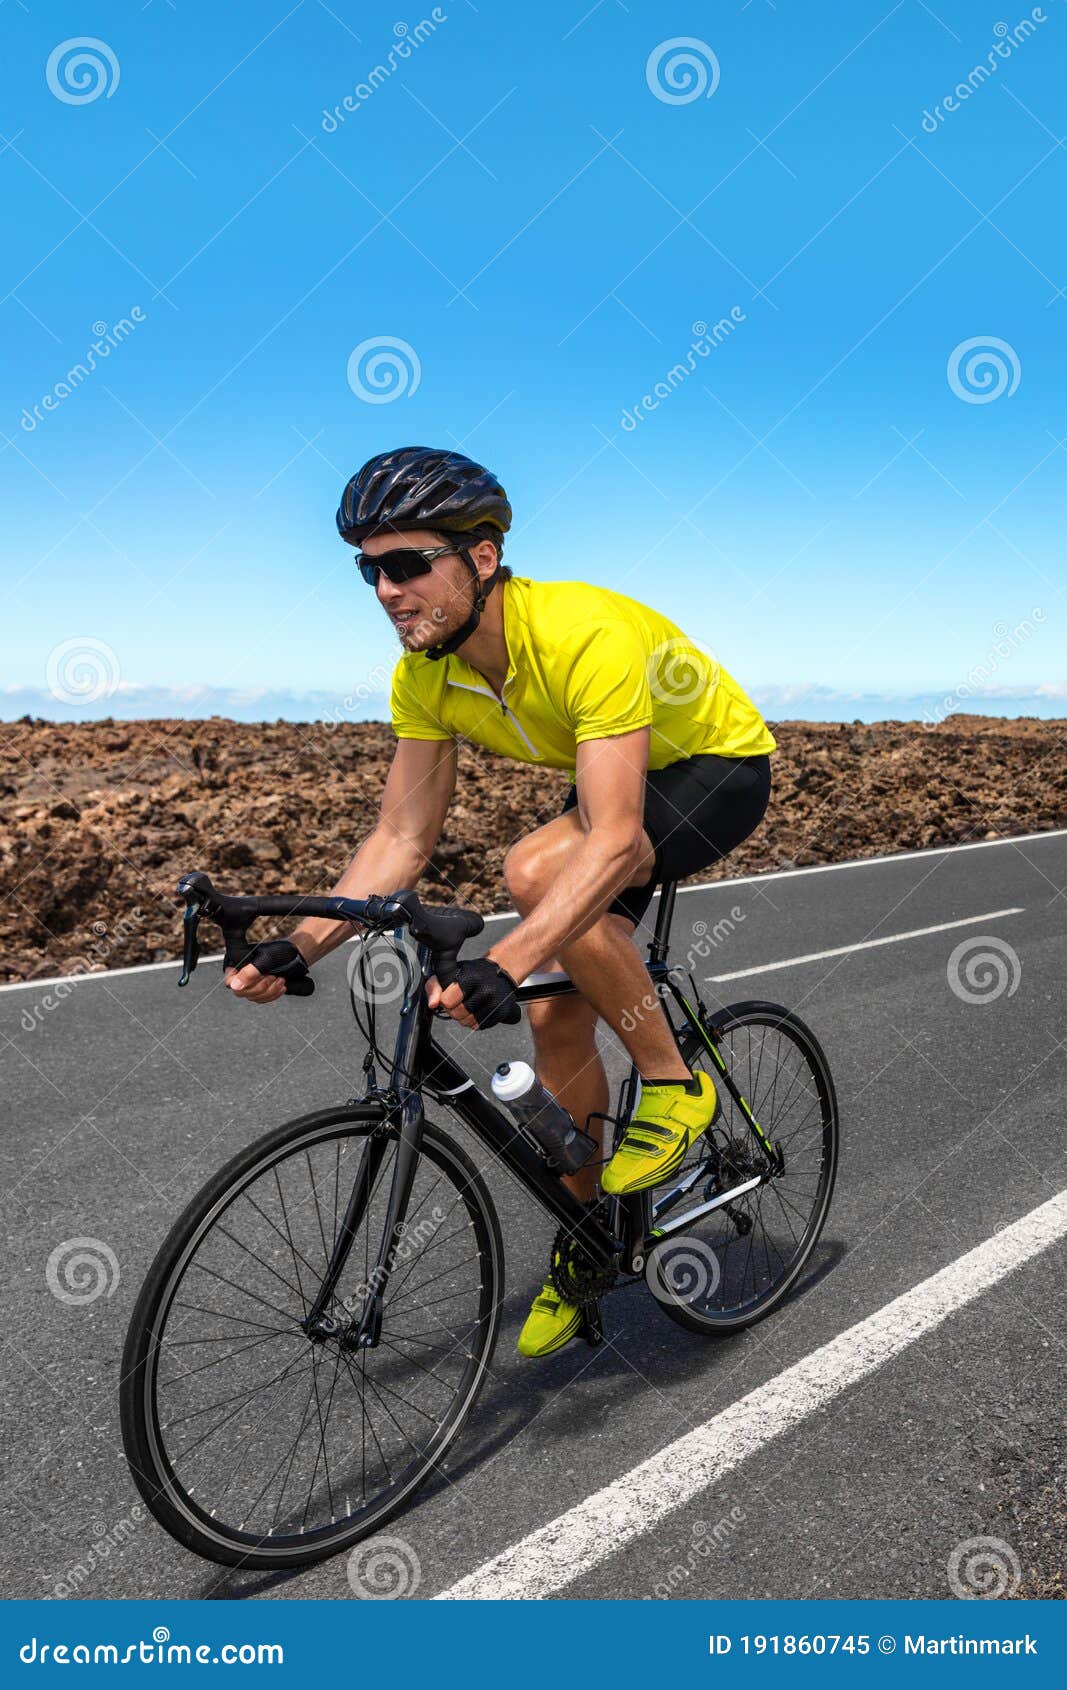 https://thumbs.dreamstime.com/z/ciclismo-de-hombre-en-carrera-por-carretera-con-bicicleta-carreras-ciclista-profesional-competici%C3%B3n-equipo-deportivo-zapatos-191860745.jpg